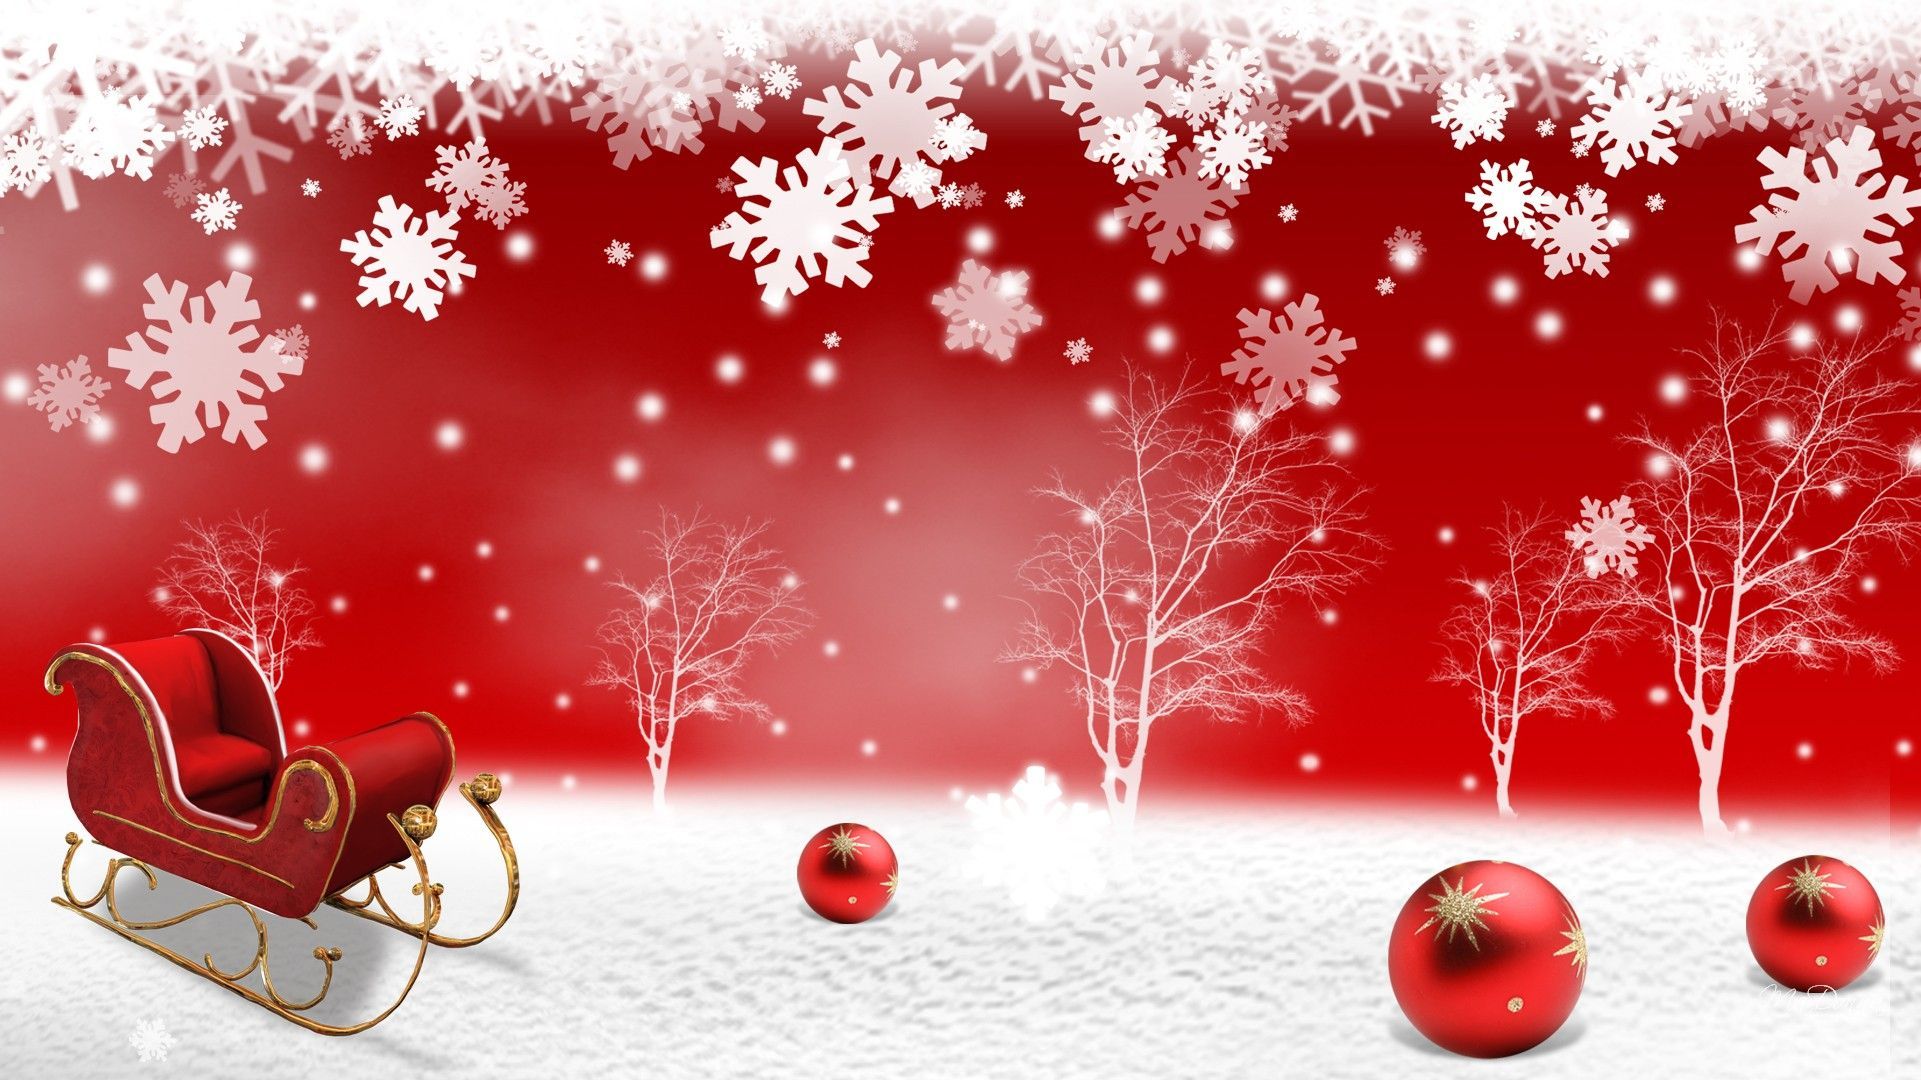 Copo de nieve rojo Navidad | Invierno y Navidad fondos de pantalla y misc